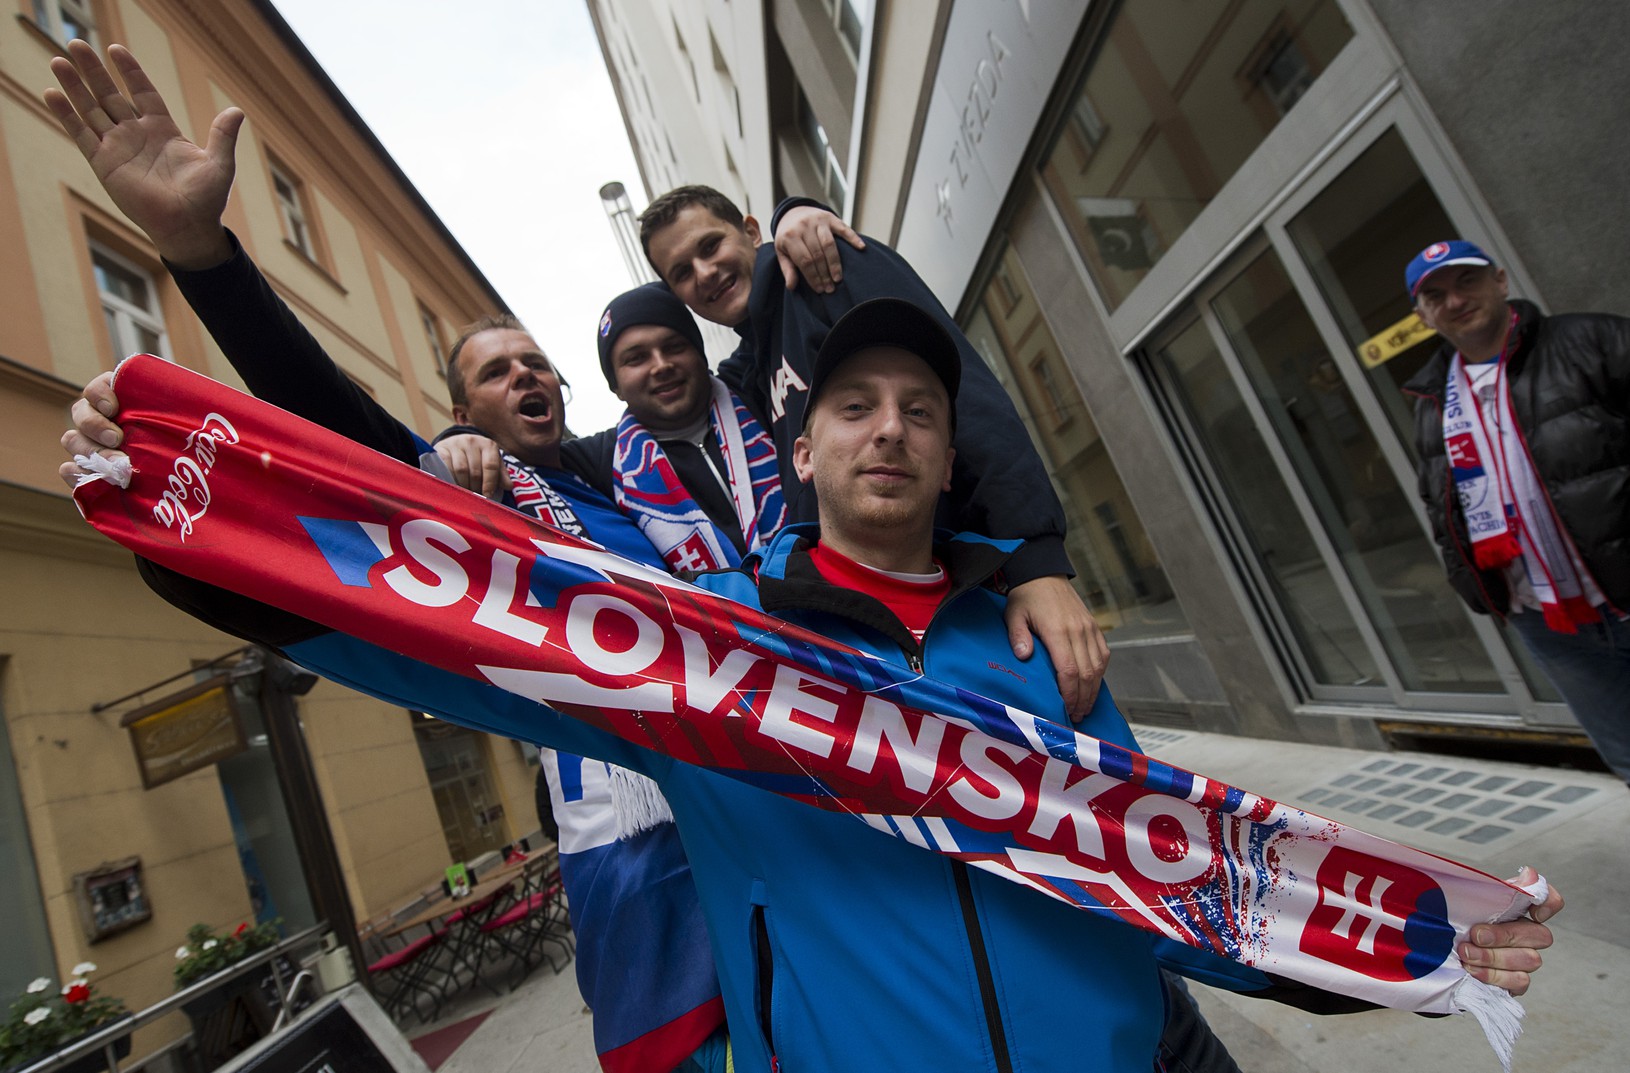 Slovenskí futbaloví fanúšikovia v